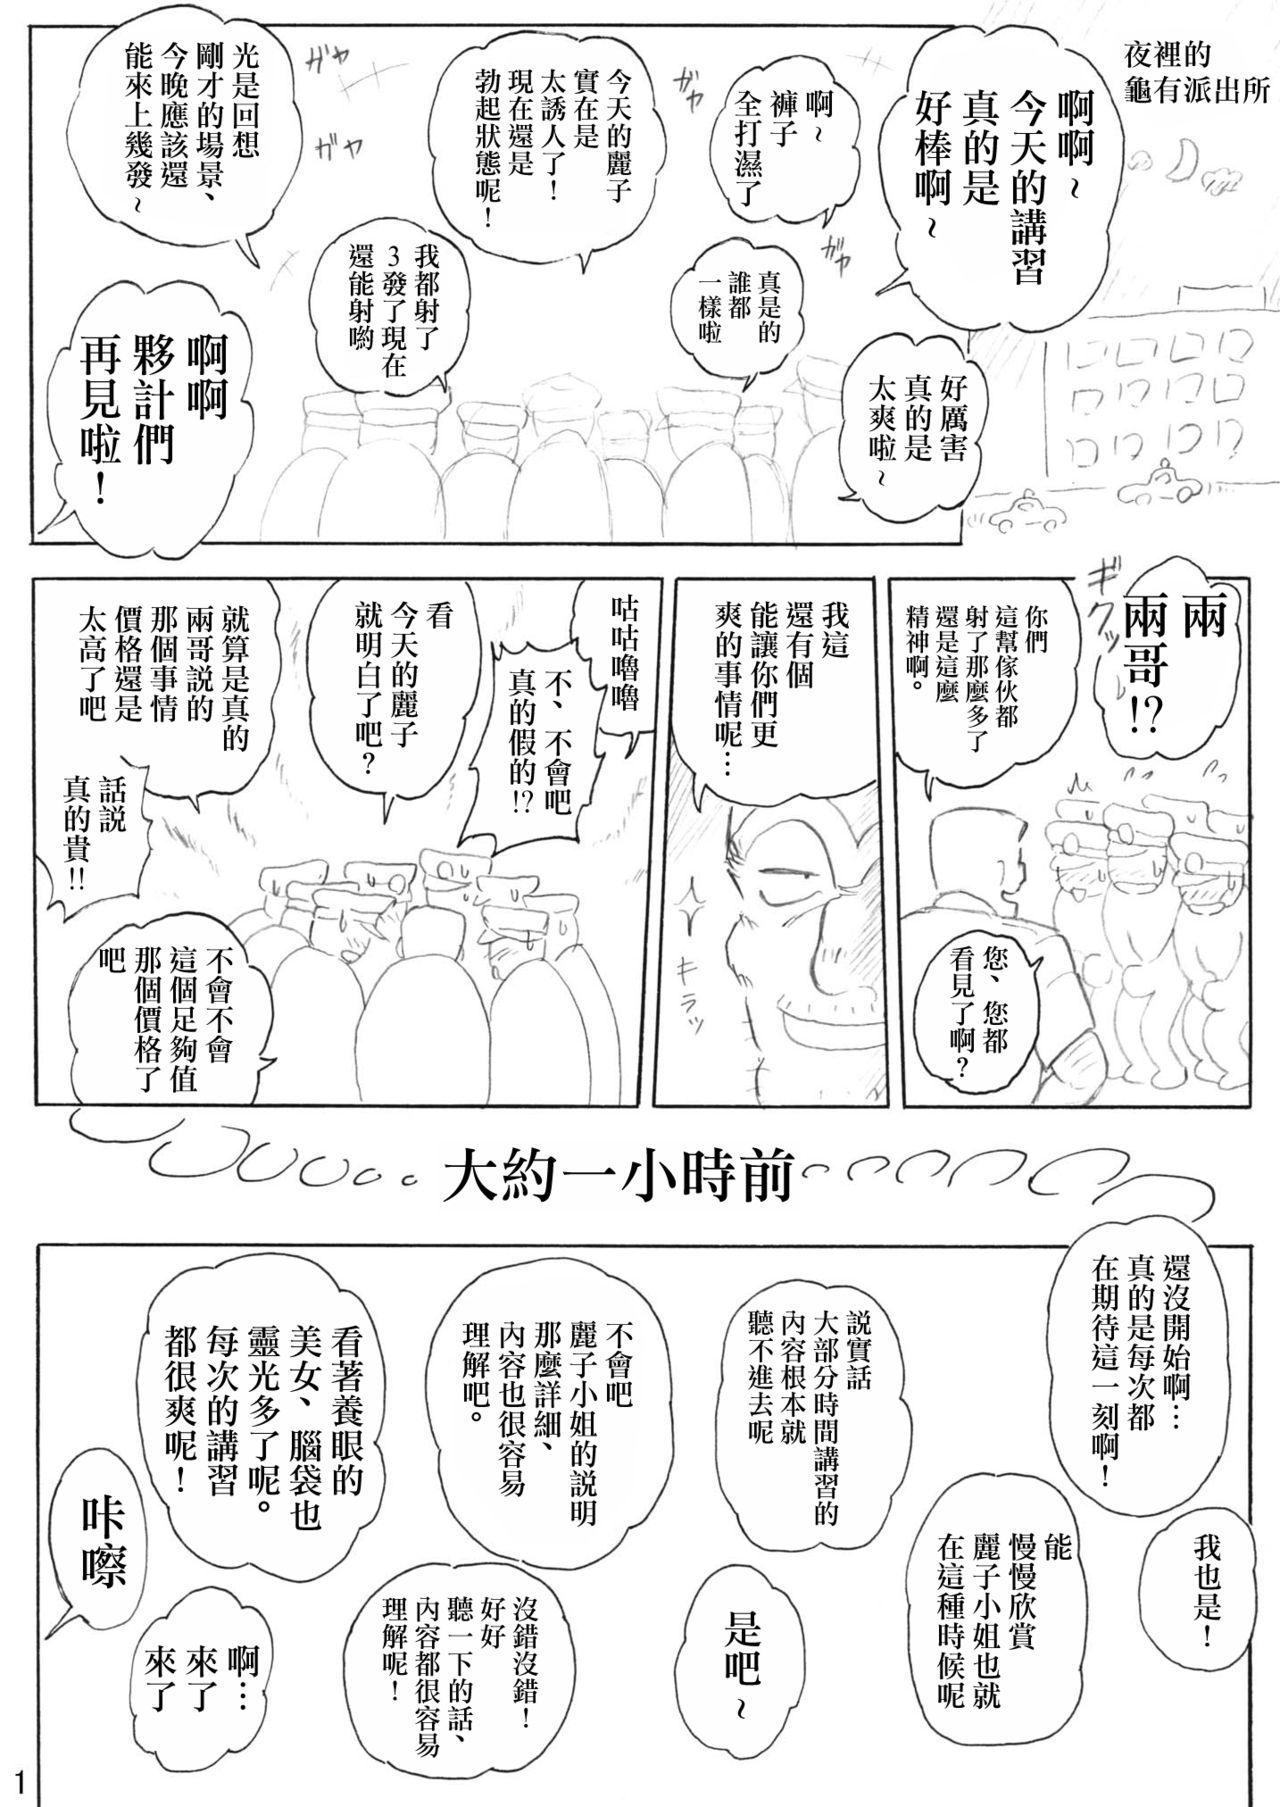 Juicy Uchiage Suihanki Gogou Ki Tsuika Rocket - Kochikame Safadinha - Page 2